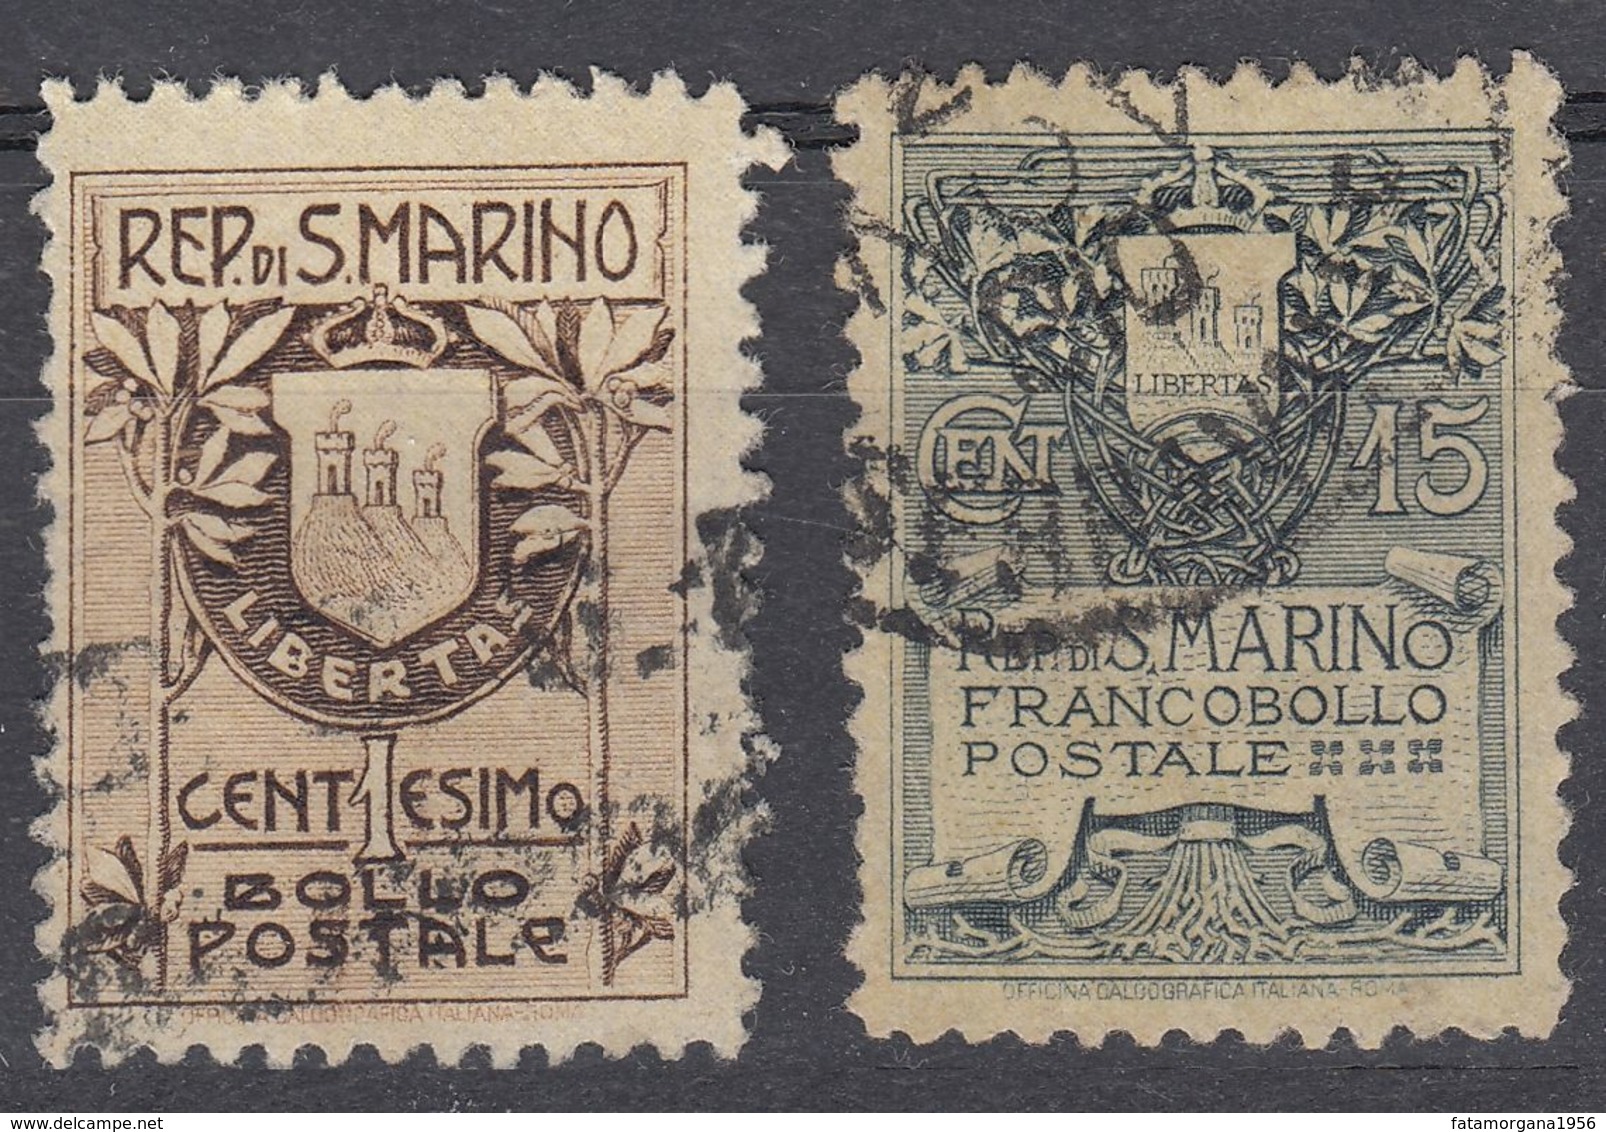 SAN MARINO - 1907 - Serie Completa Usata: Yvert 47 E 48, Come Da Immagine. - Oblitérés